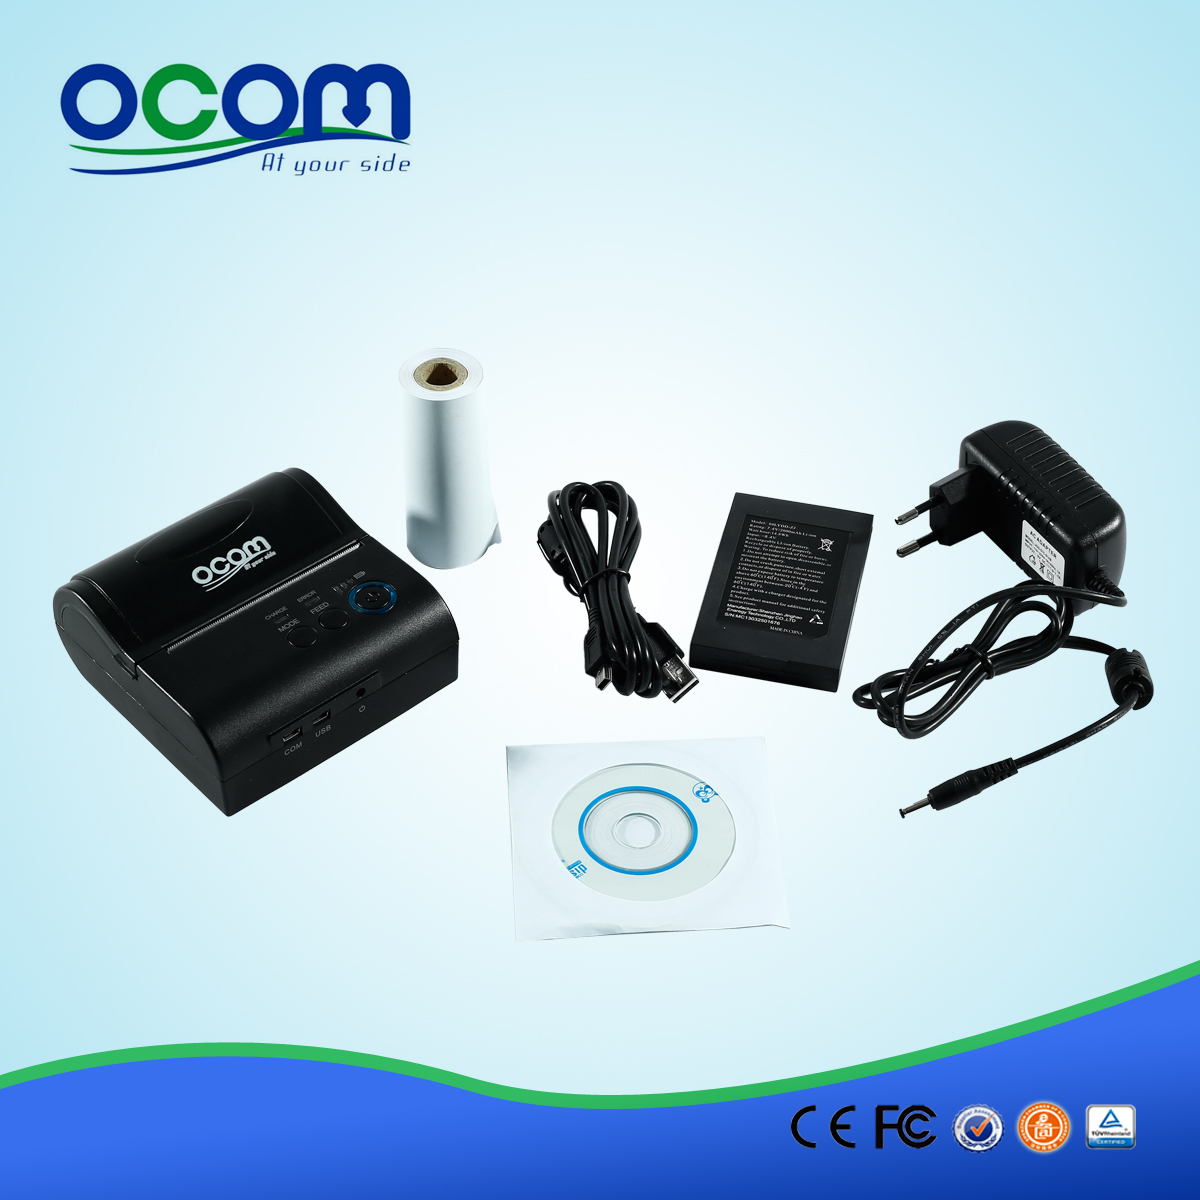 80mm calidad OCPP-M082 de alta USB portátil impresora móvil del bluetooth